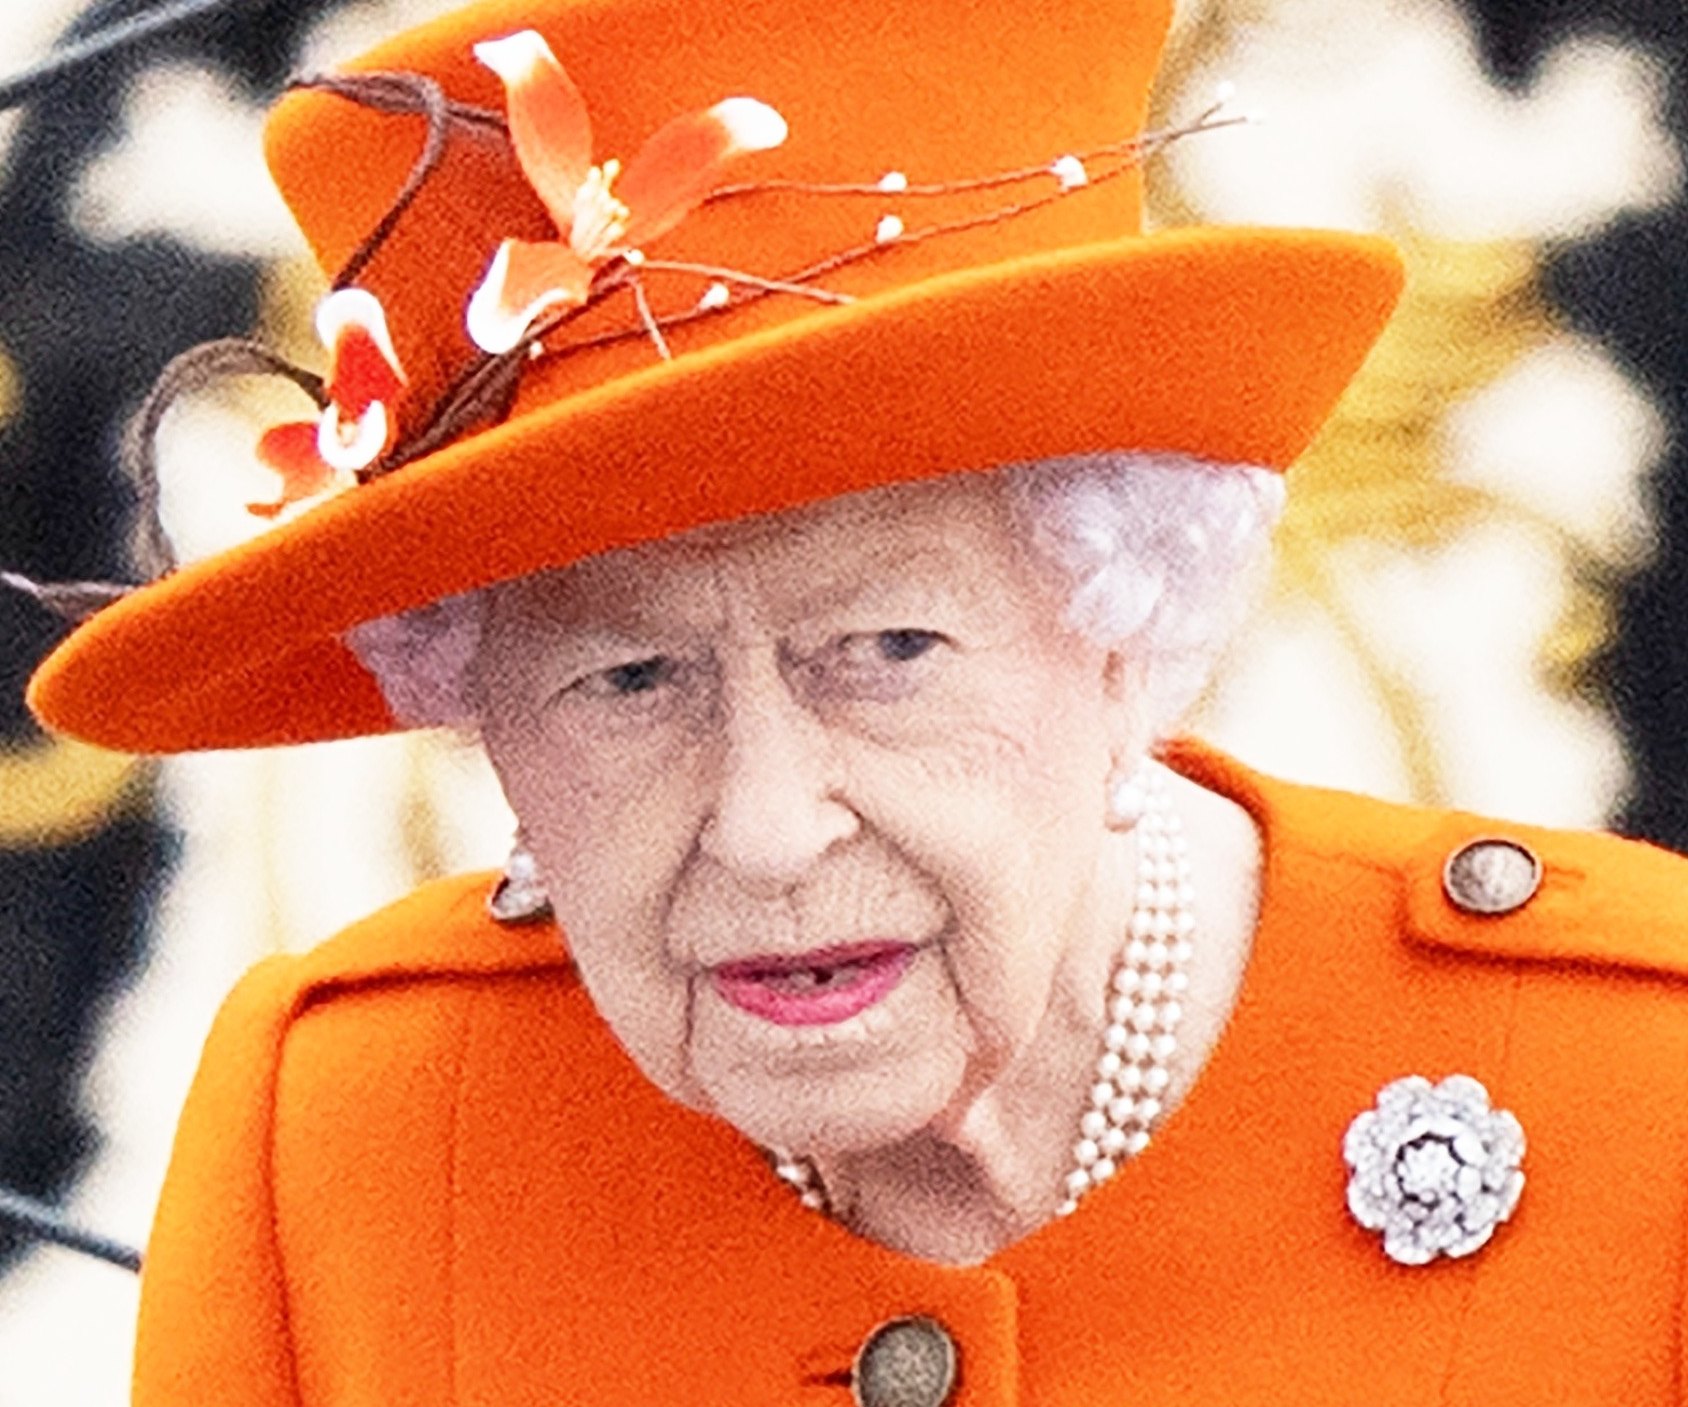 Вся страна глубоко обеспокоена: здоровье королевы Елизаветы II резко ухудшилось